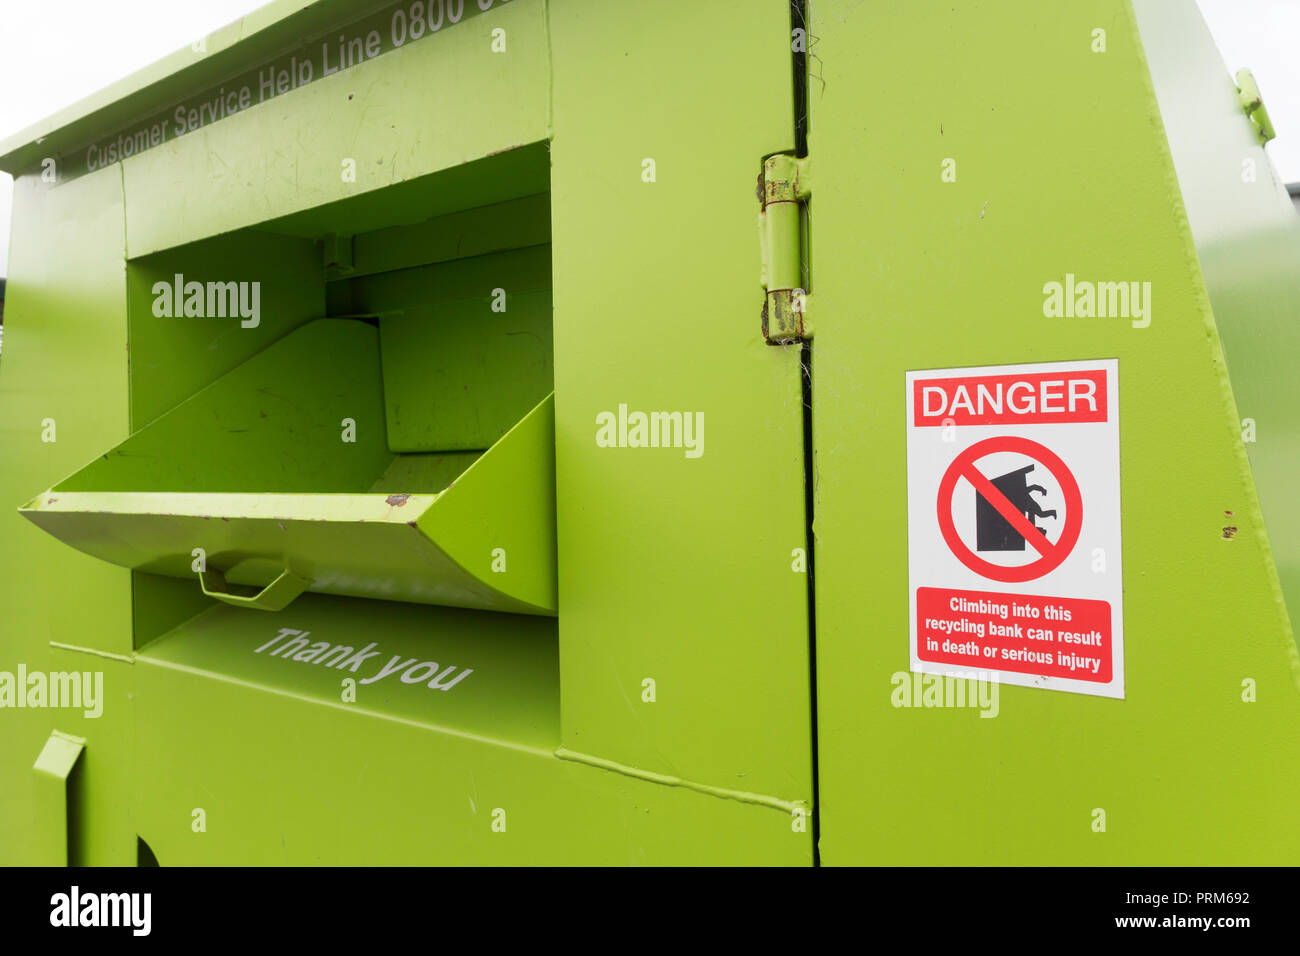 Signer, Danger, escalade dans cette banque de recyclage peut entraîner la mort, et de recyclage des déchets de camping Centre à Wrekenton, Gateshead, England, UK Banque D'Images